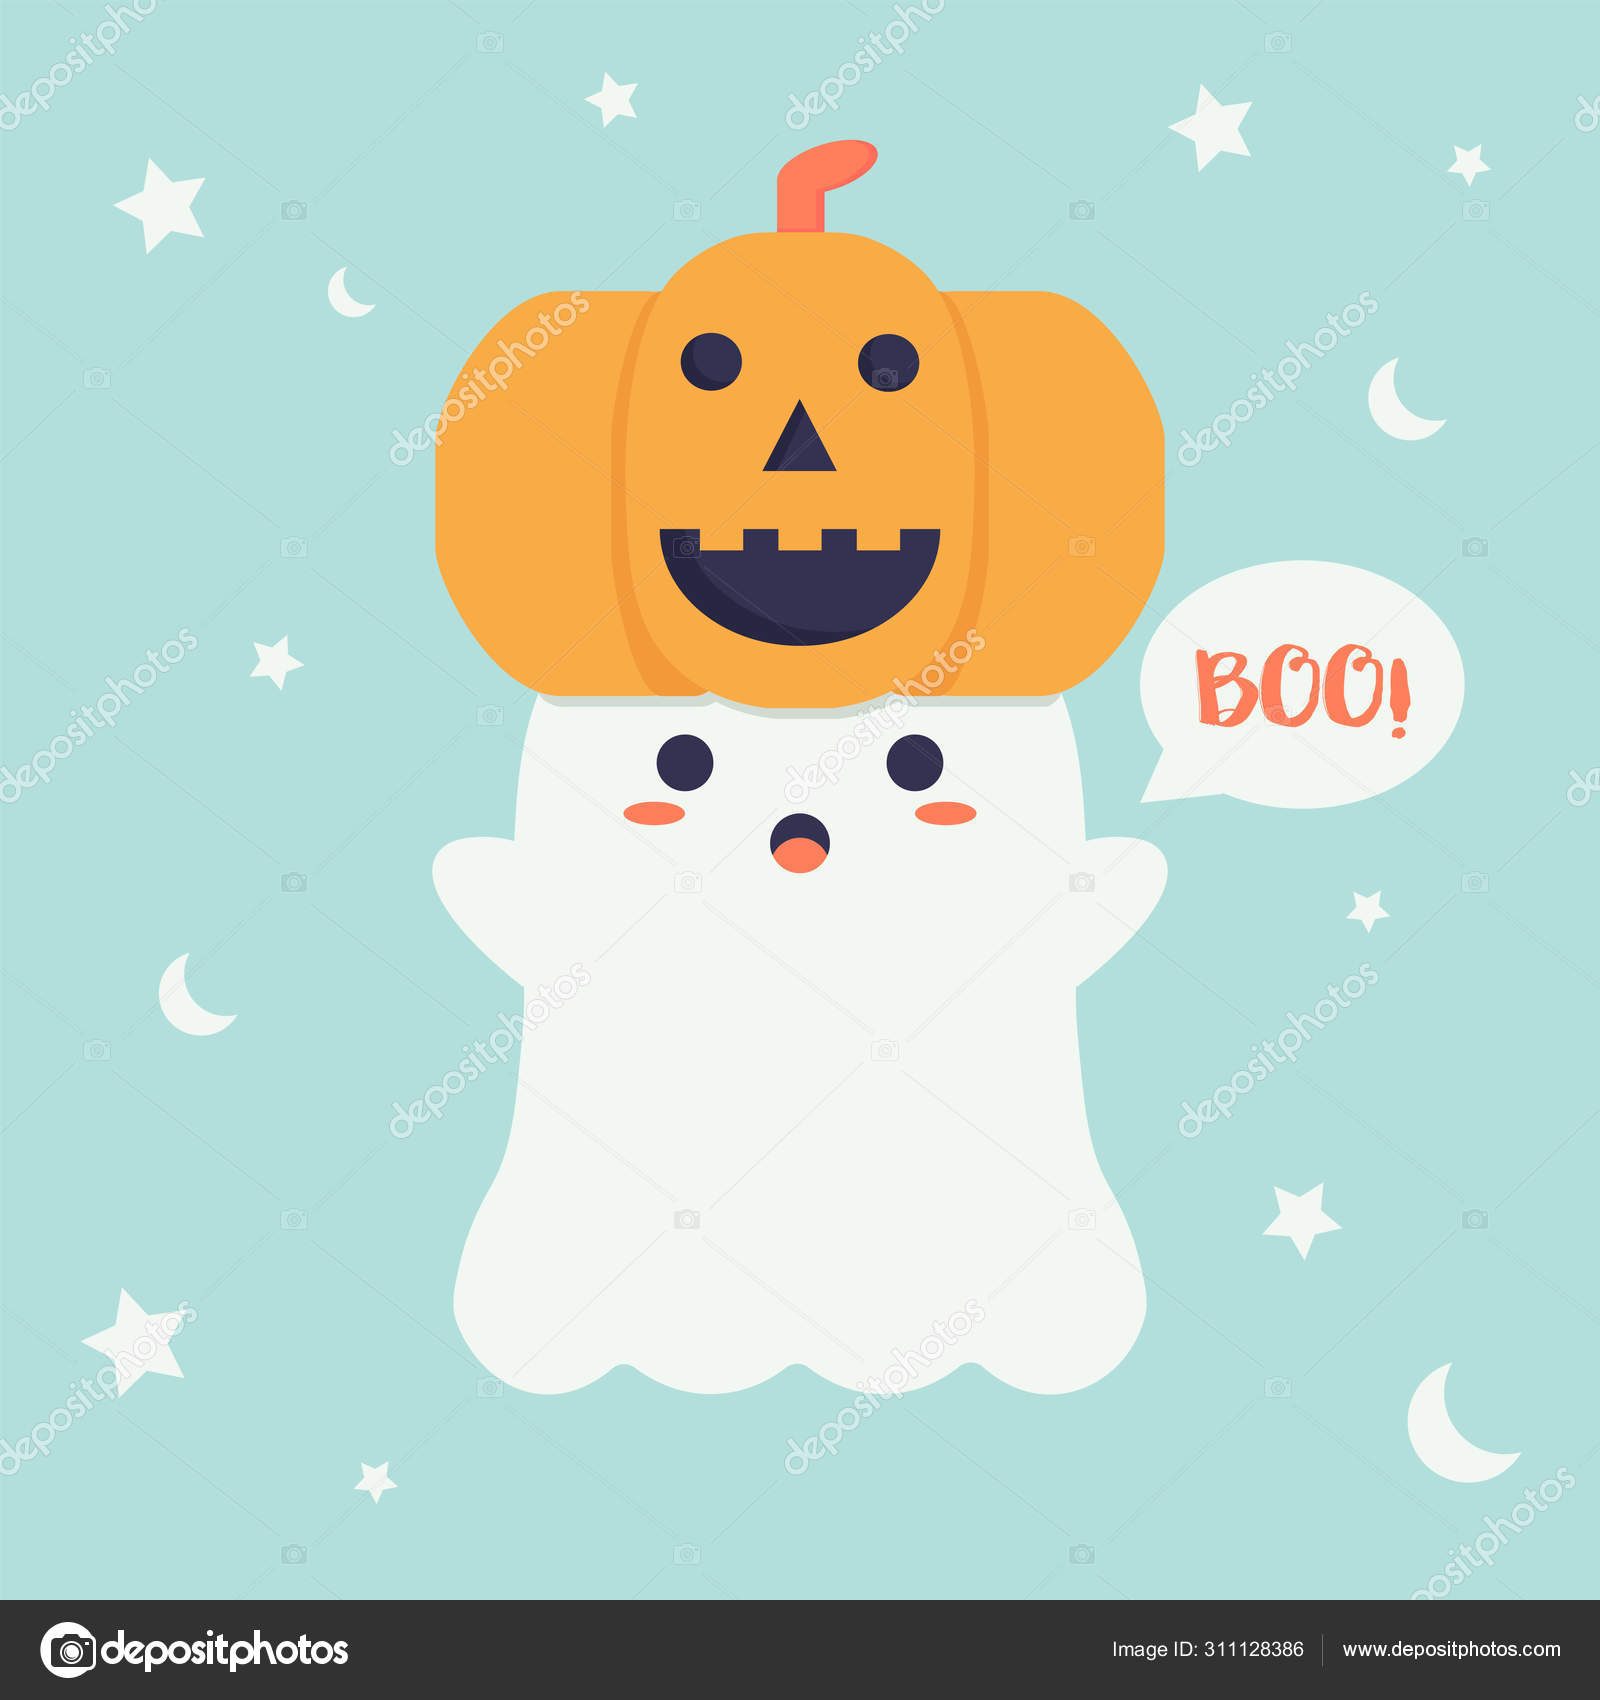 Thiết kế nền hình vẽ đáng yêu cho đêm Halloween: Đậm chất Halloween nhưng vẫn được làm mới bởi những hình vẽ đáng yêu, mang đến cho không gian đêm Halloween của bạn cảm giác ấm áp hơn bao giờ hết.